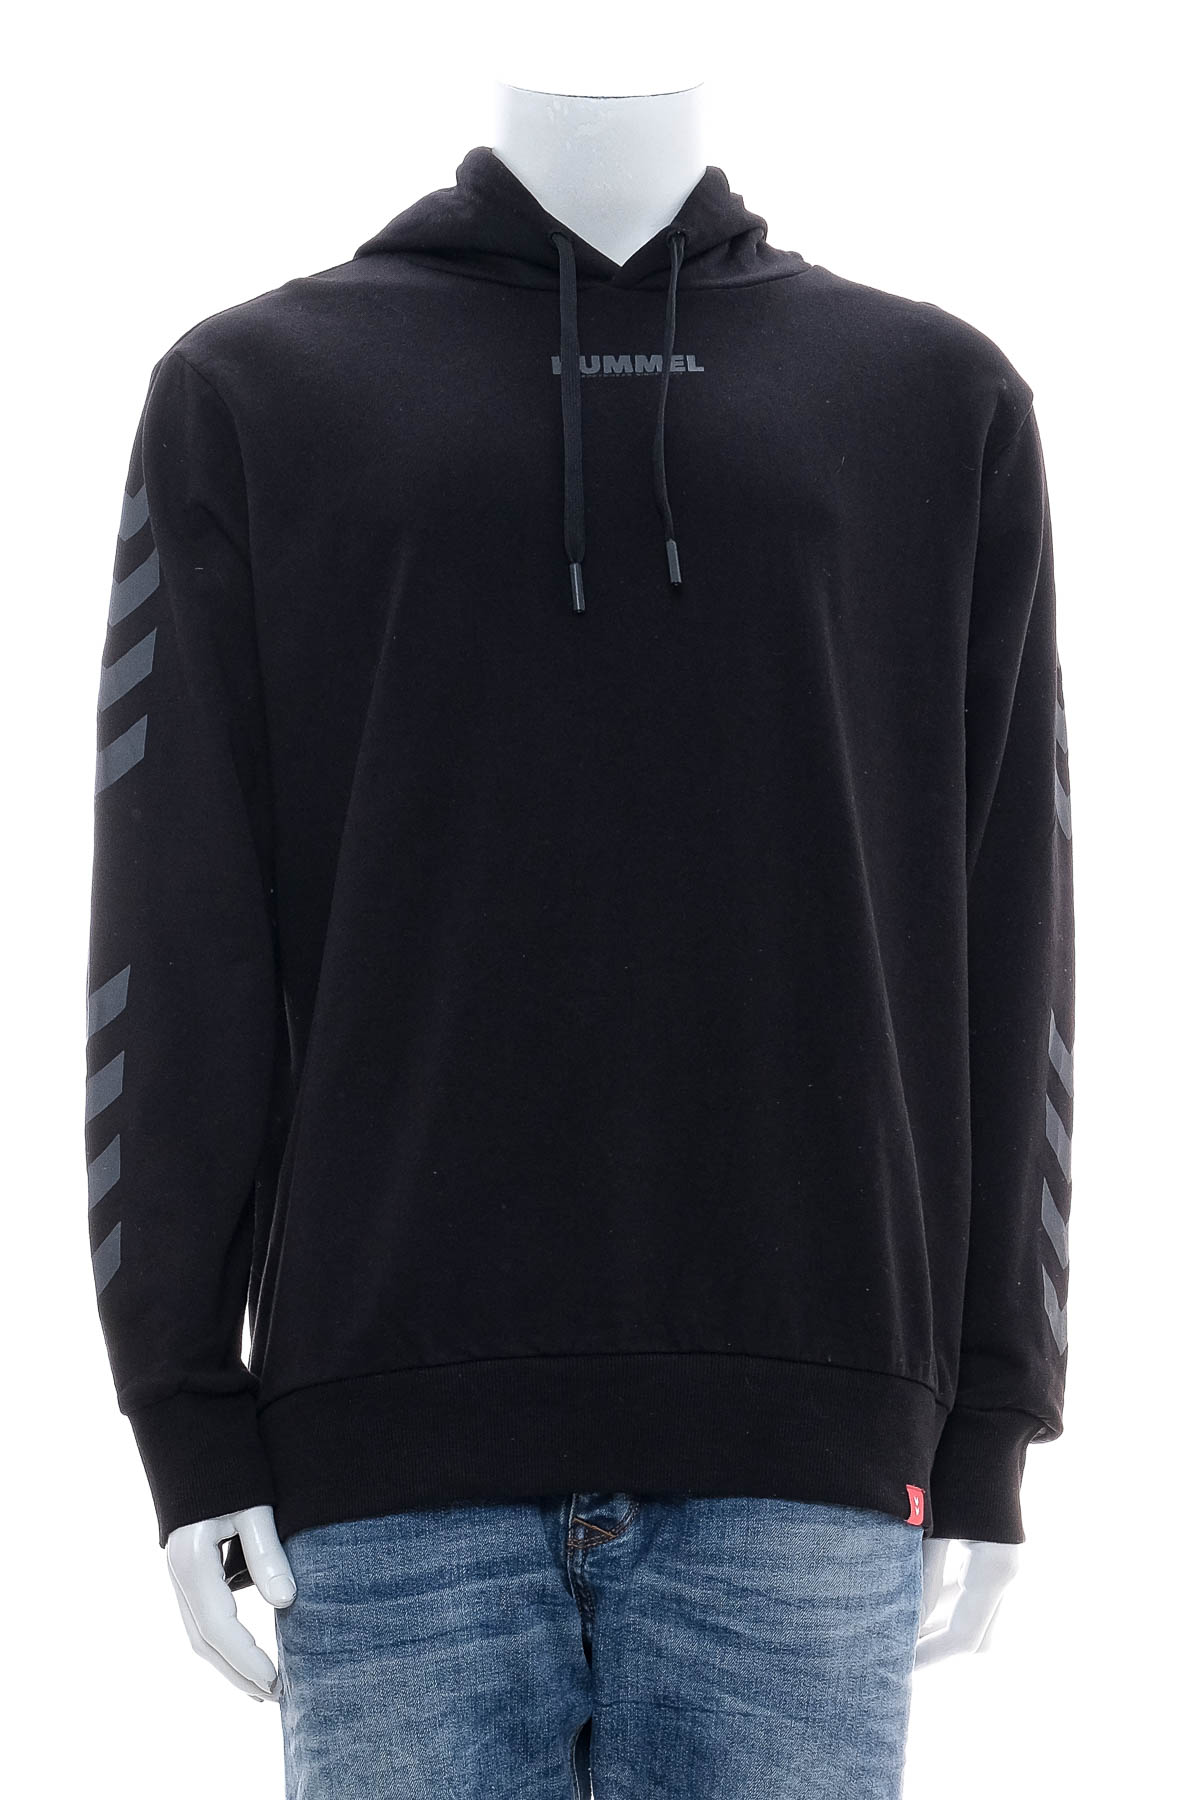 Men's sweatshirt - Hummel - 0